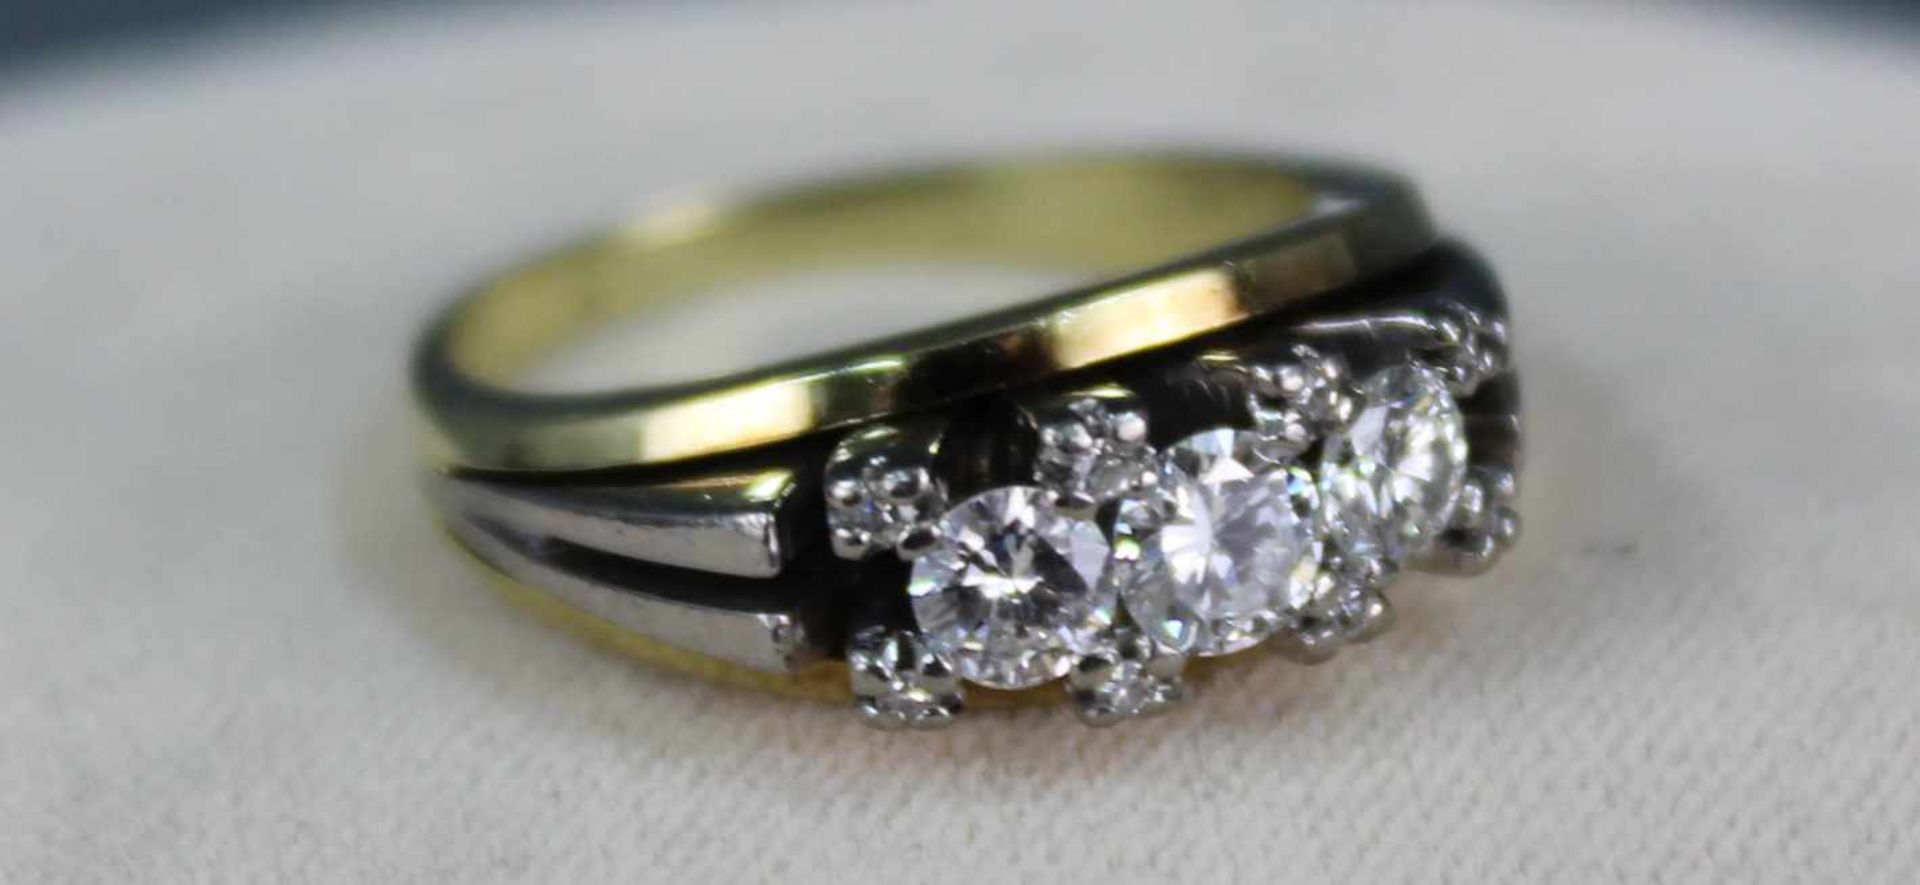 Gold Ring mit 3 Brillanten und 8 Diamanten. WG 585 und GG 585.Der Hauptstein circa 0,3 Karat, die